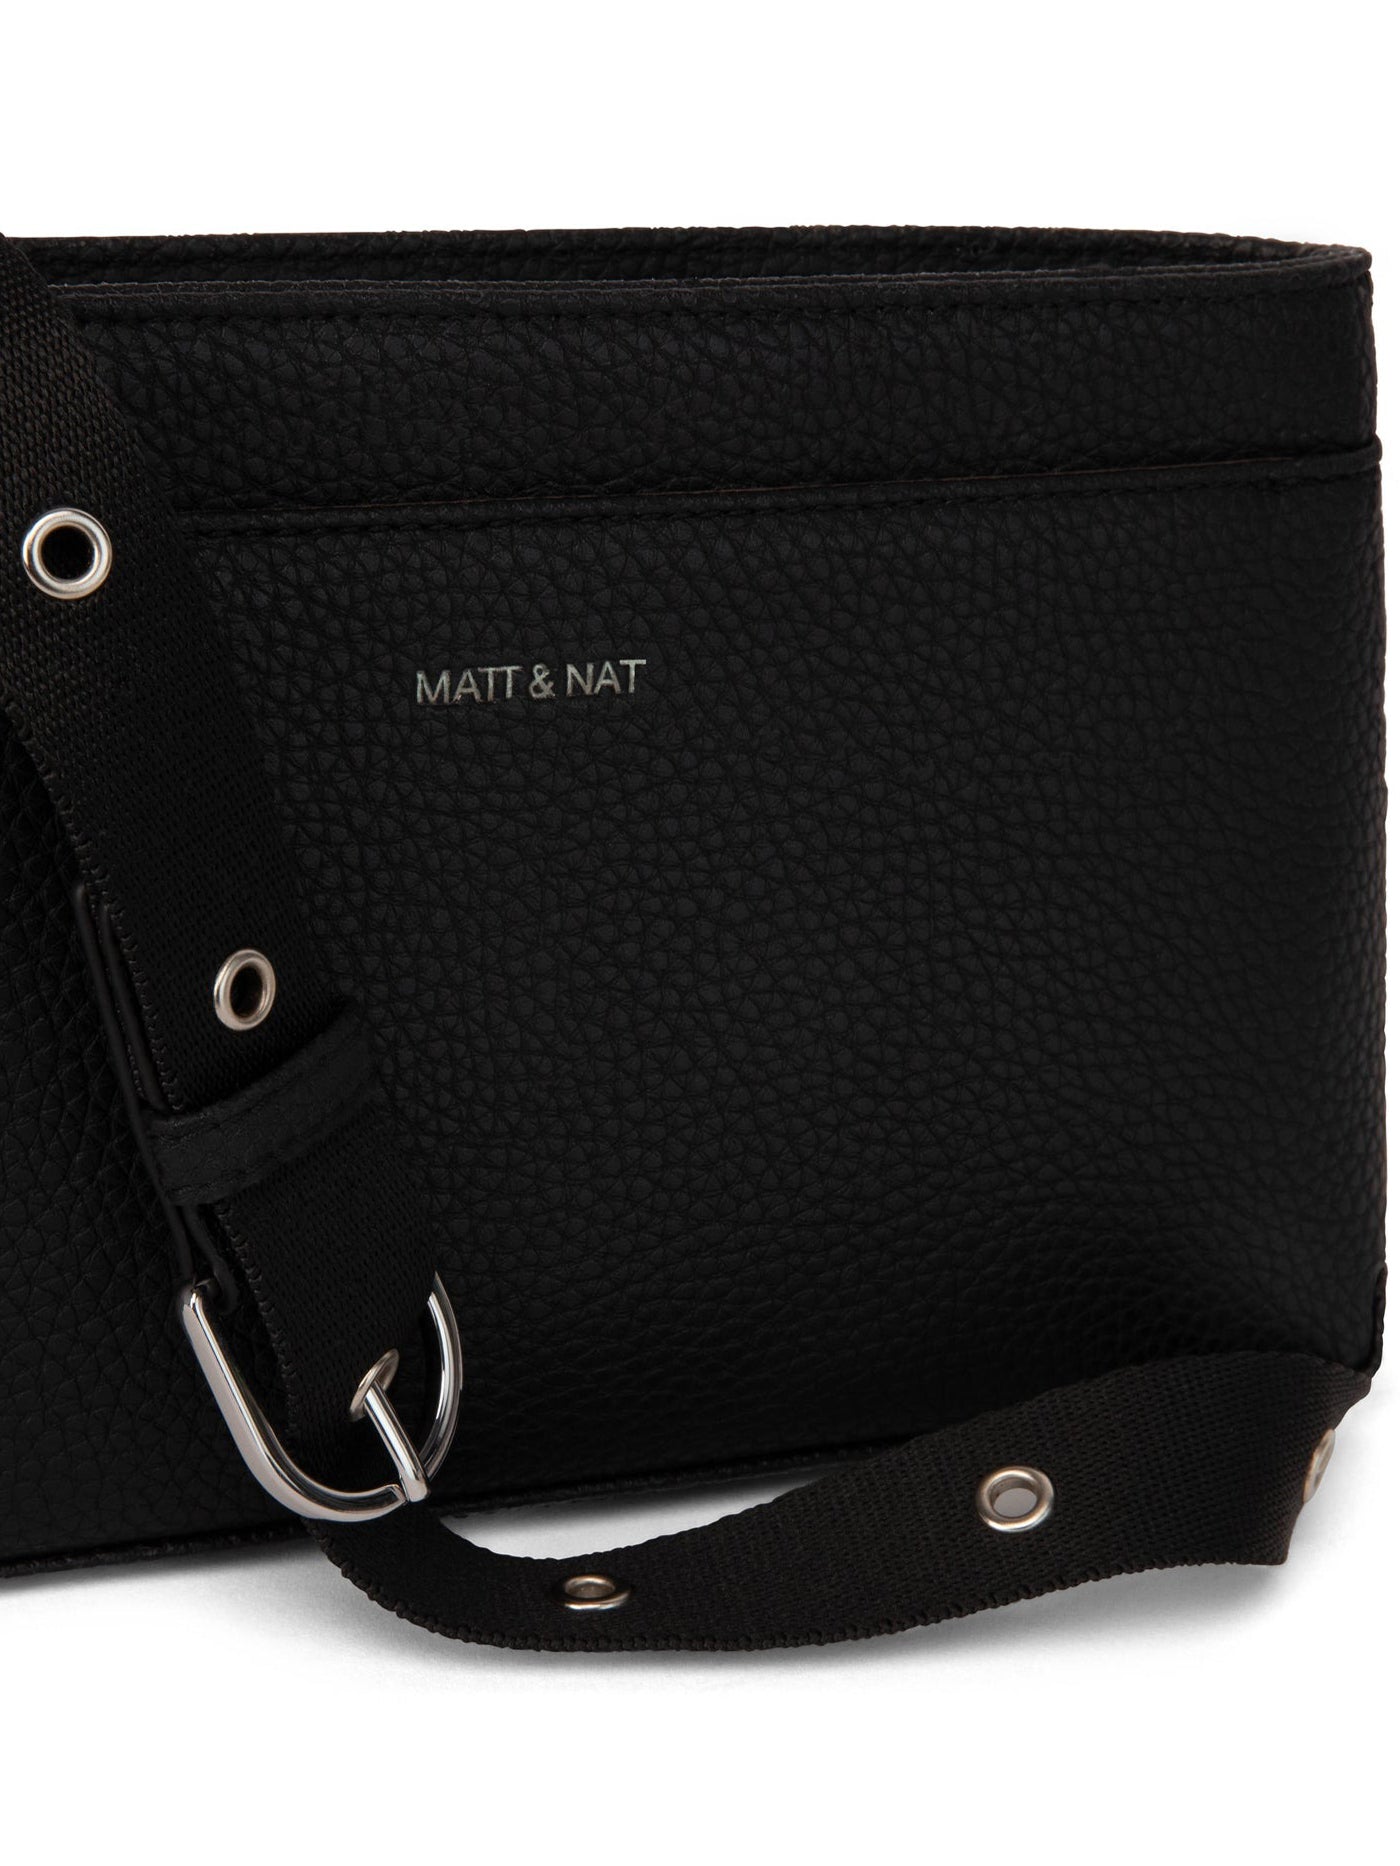 Matt & Nat Gor Purity Collection Women Belt Bag